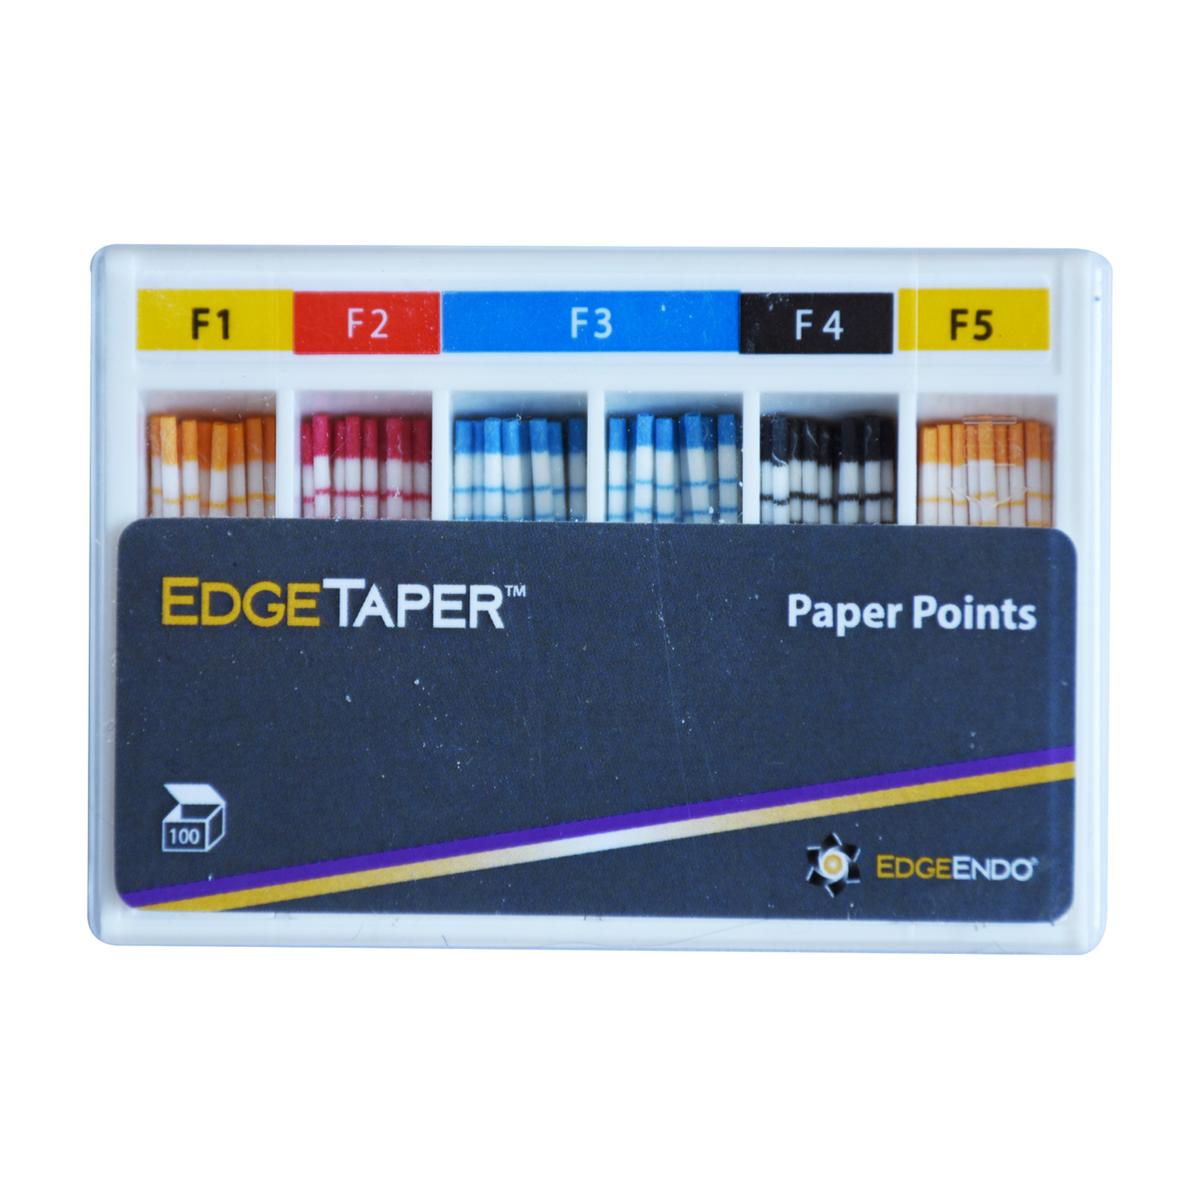 EdgeTaper Paper Points - Assortiment - F1 t/m F5, 100 stuks